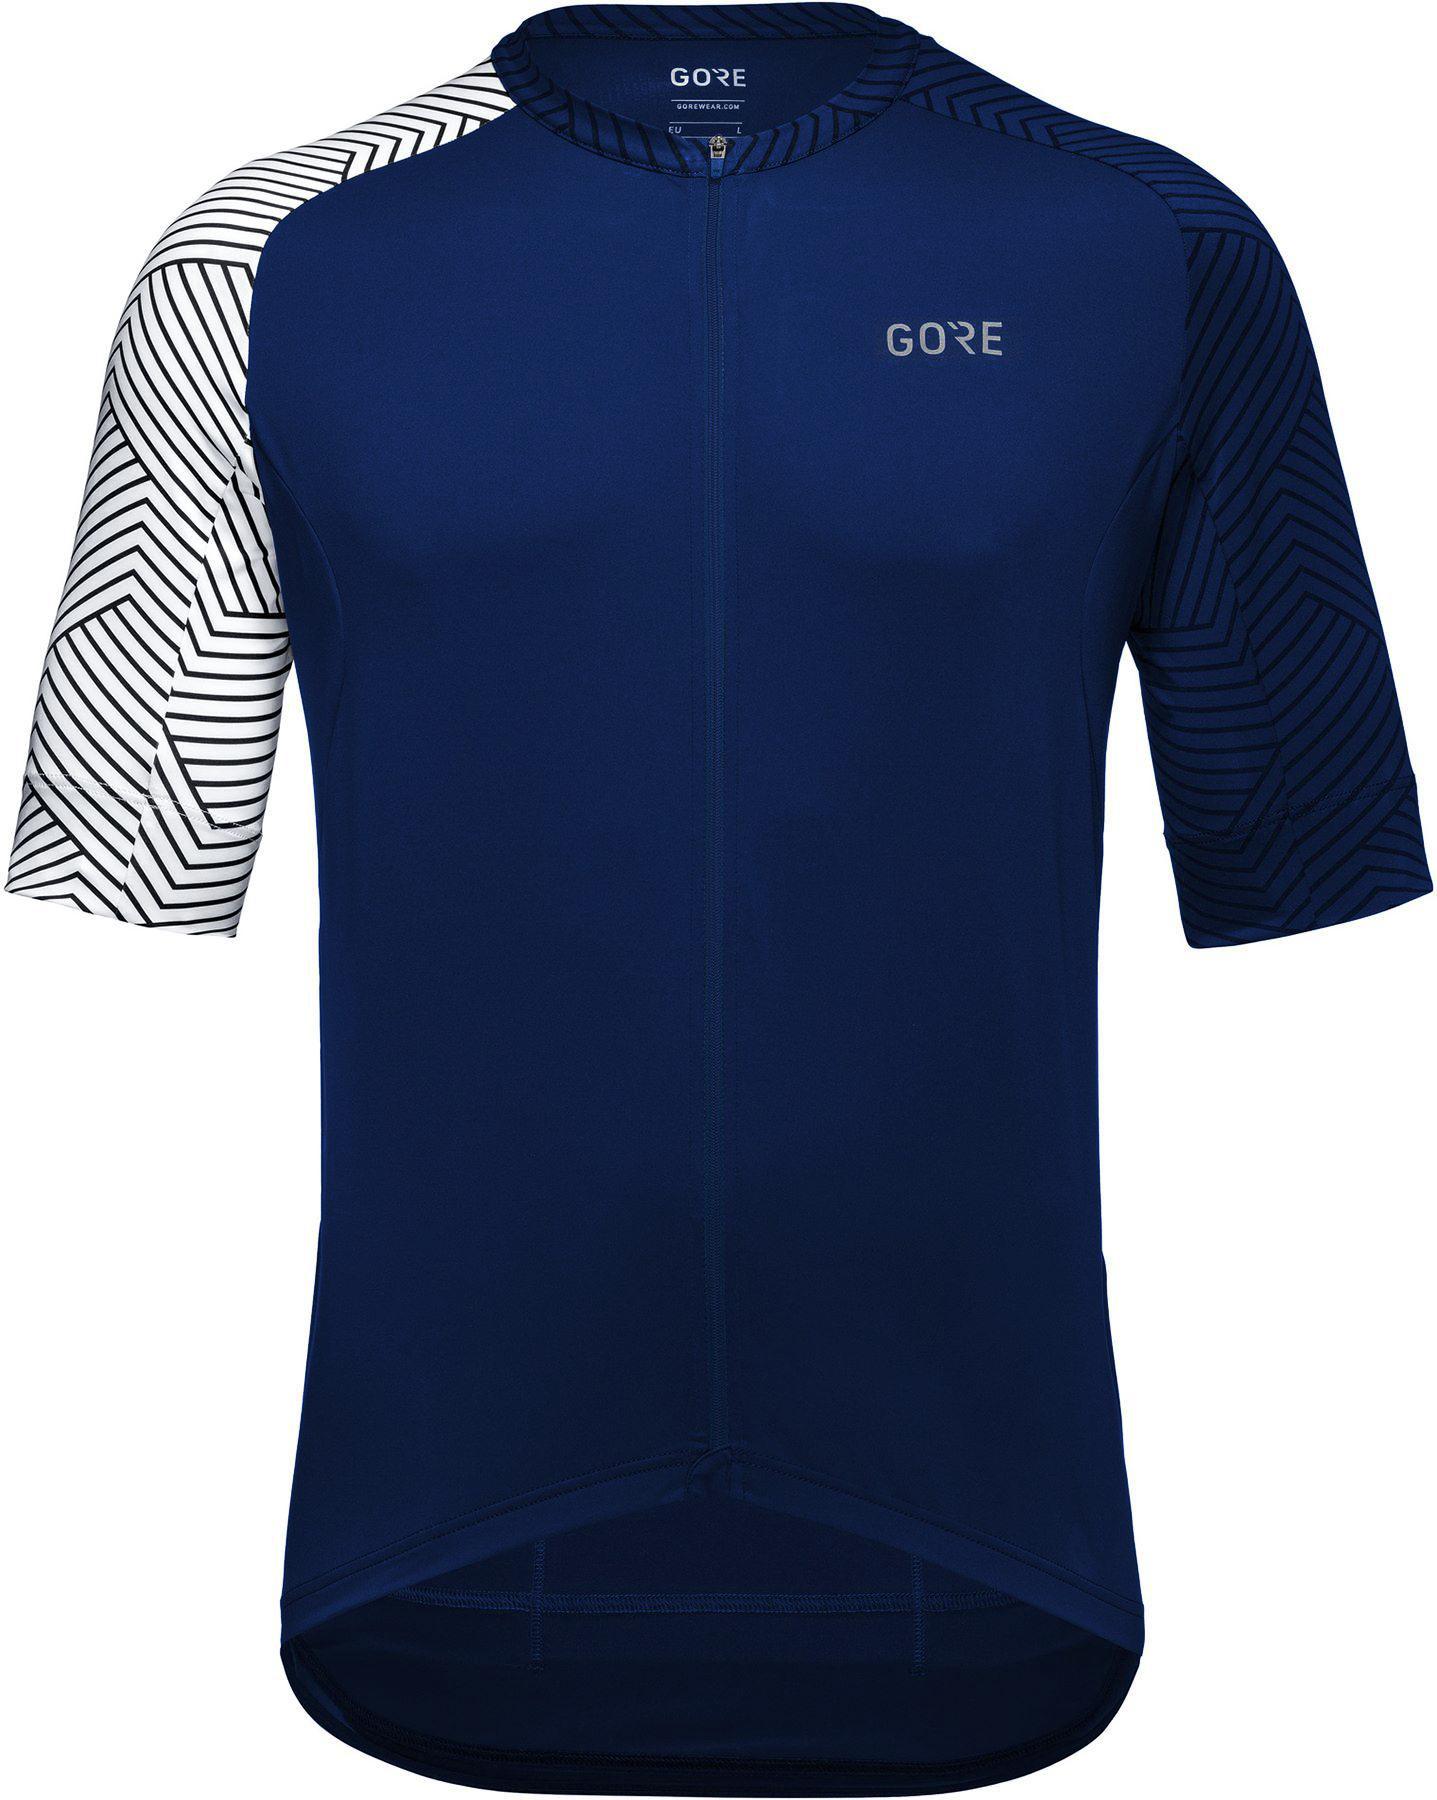 Gorewear C5 Jersey  Orbit Blue/white